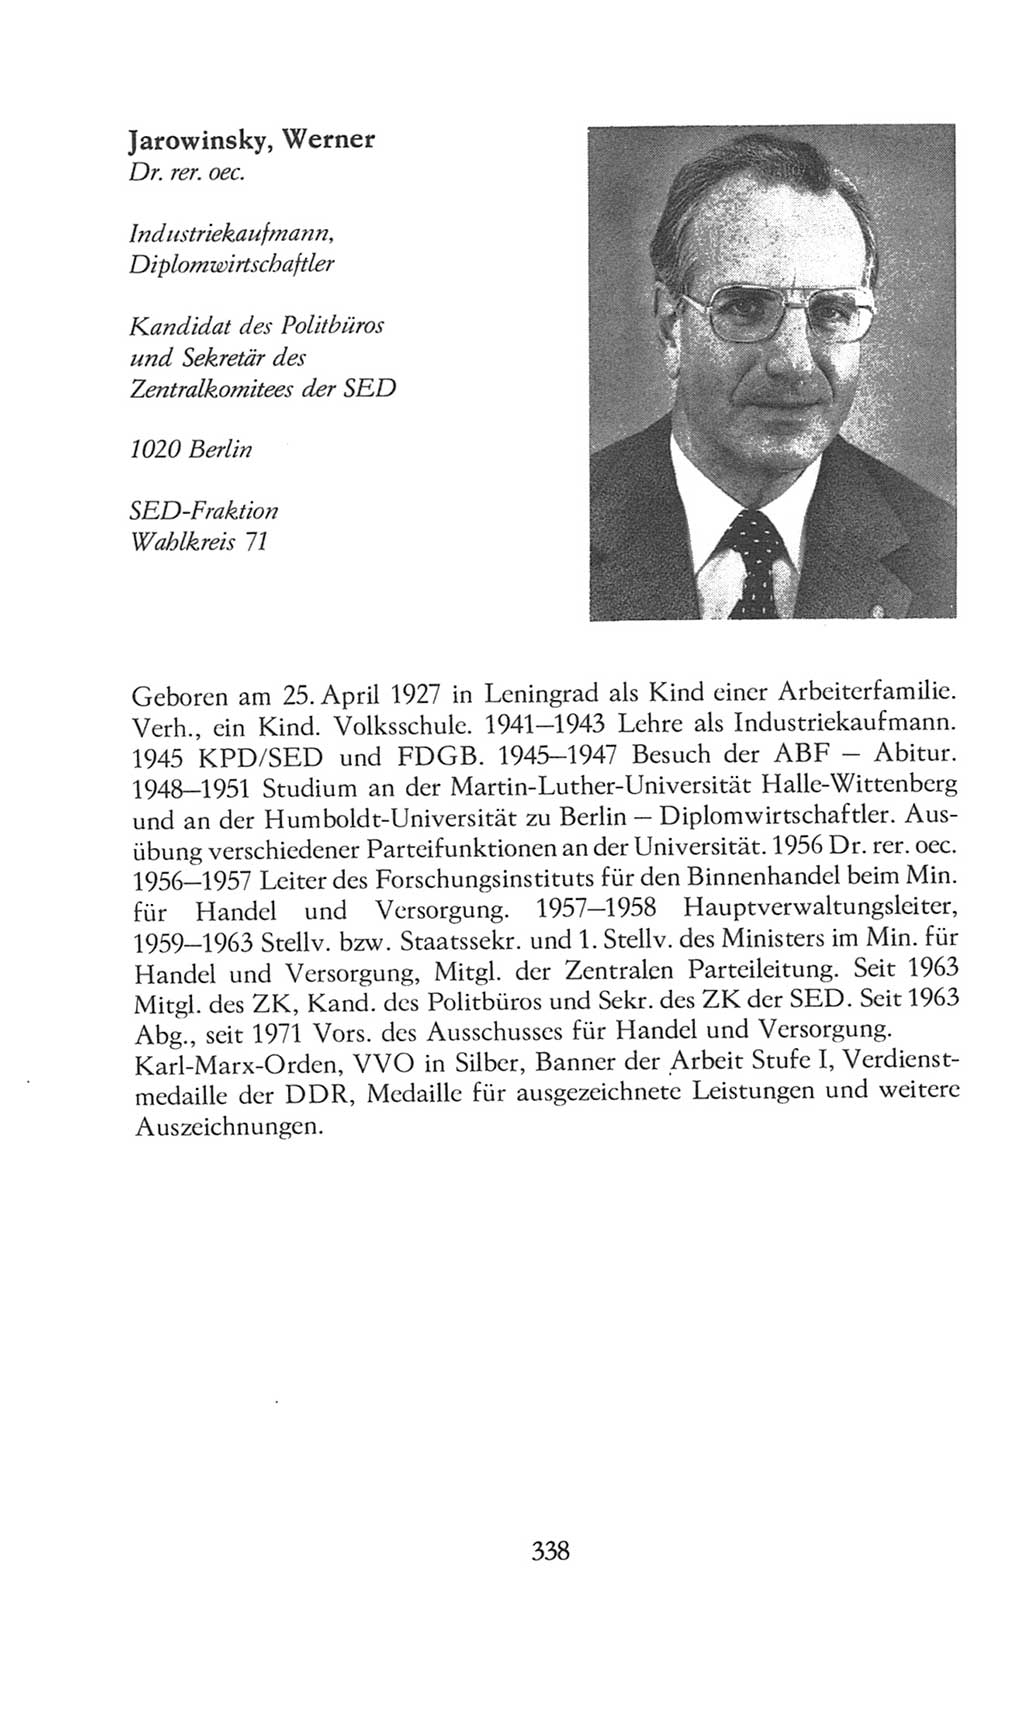 Volkskammer (VK) der Deutschen Demokratischen Republik (DDR), 8. Wahlperiode 1981-1986, Seite 338 (VK. DDR 8. WP. 1981-1986, S. 338)